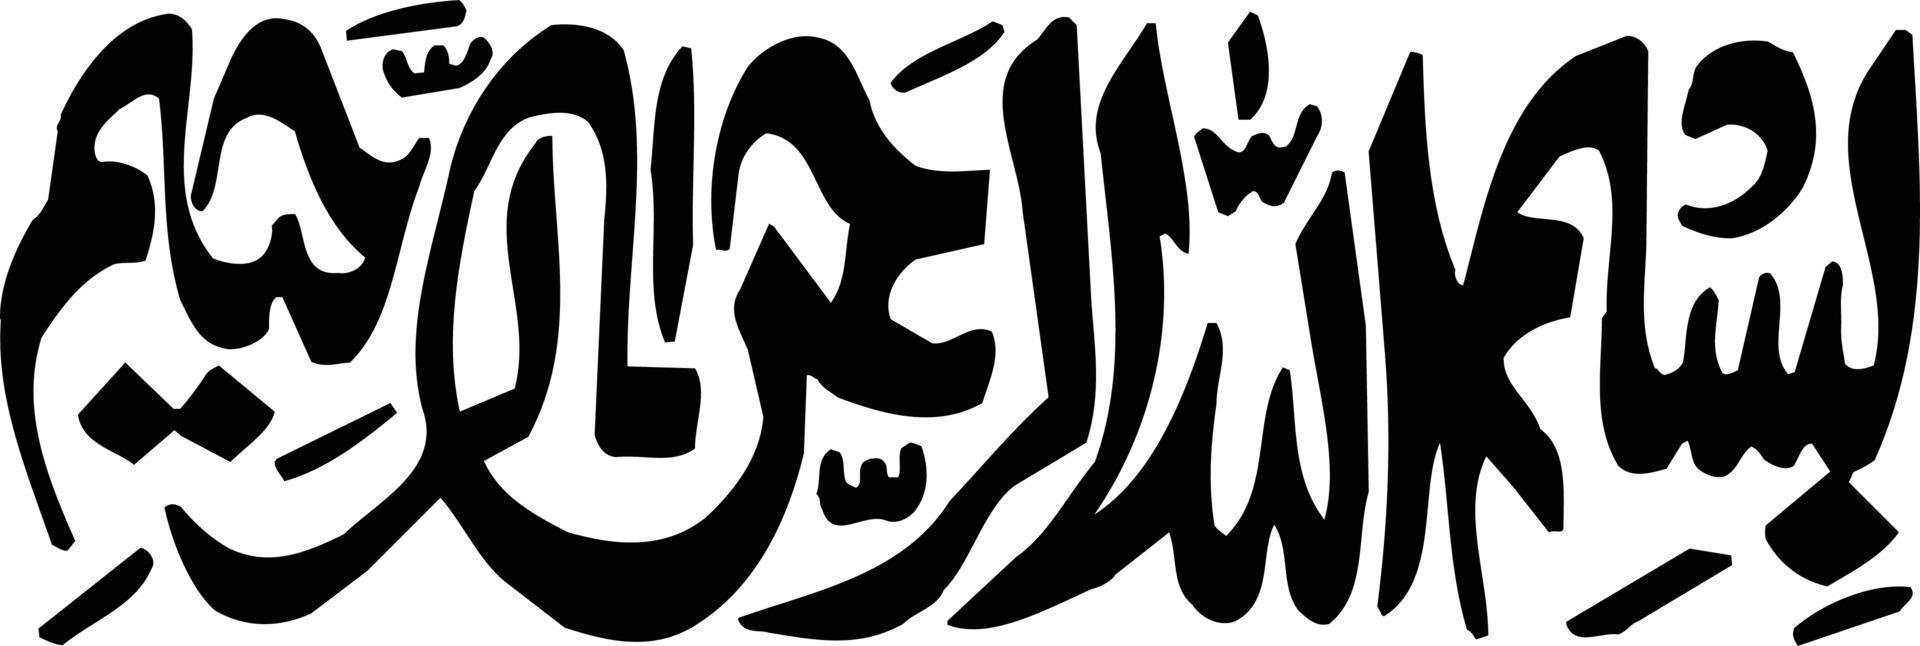 bismila titel islamische kalligraphie freier vektor